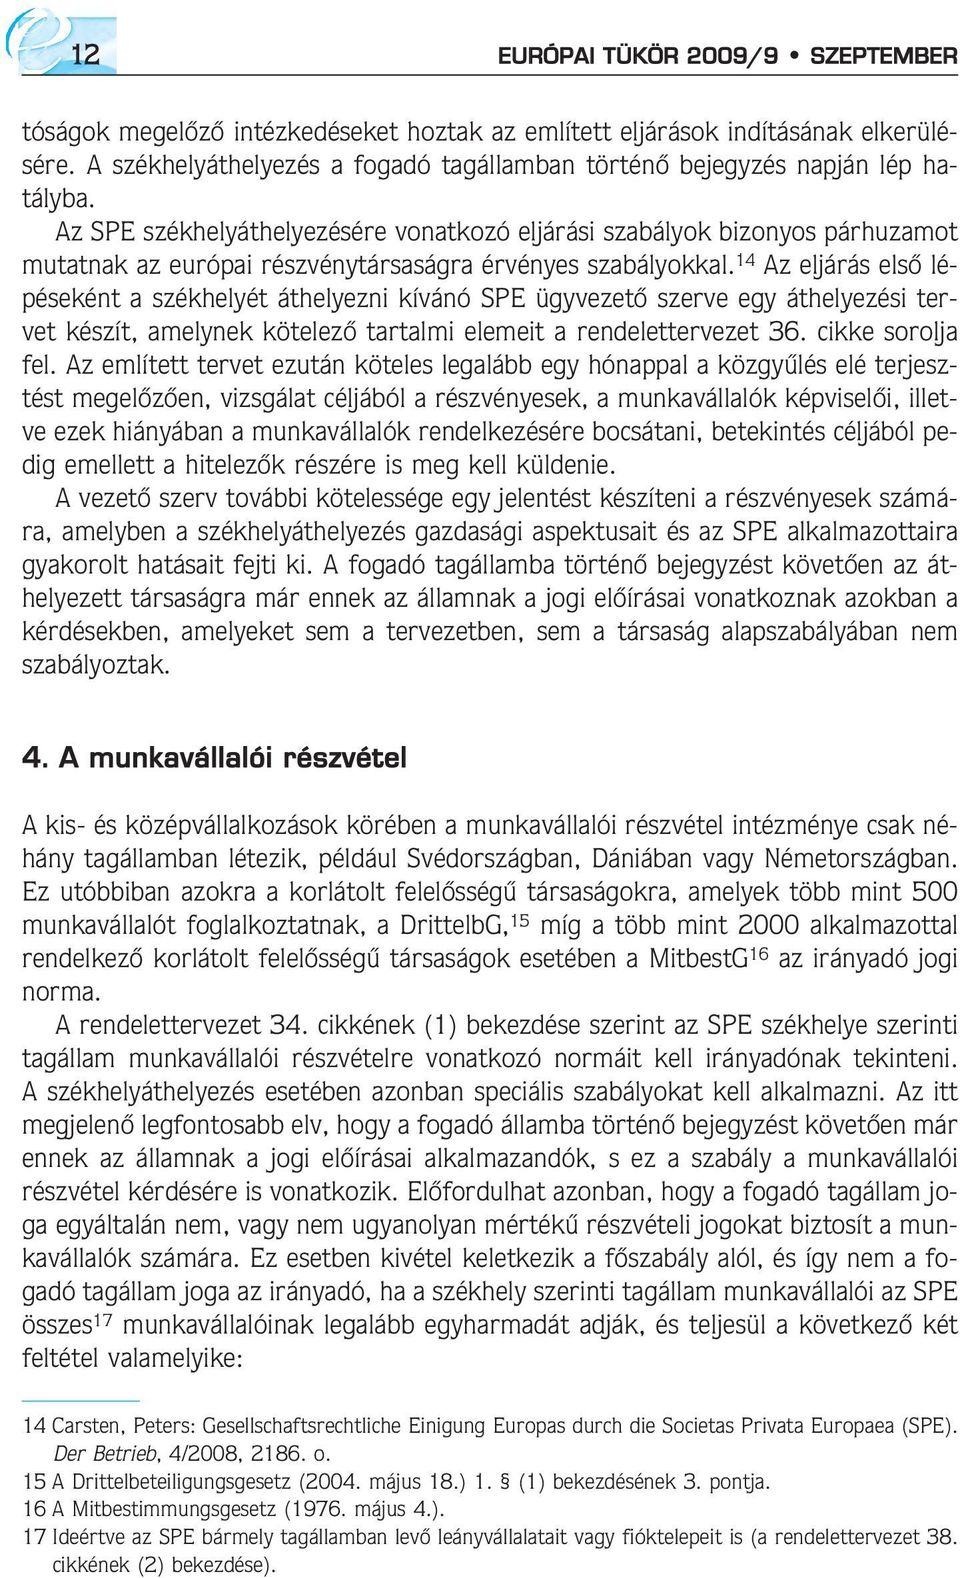 EURÓPAI TÜKÖR XIV. ÉVF. 9. SZÁM n SZEPTEMBER - PDF Ingyenes letöltés